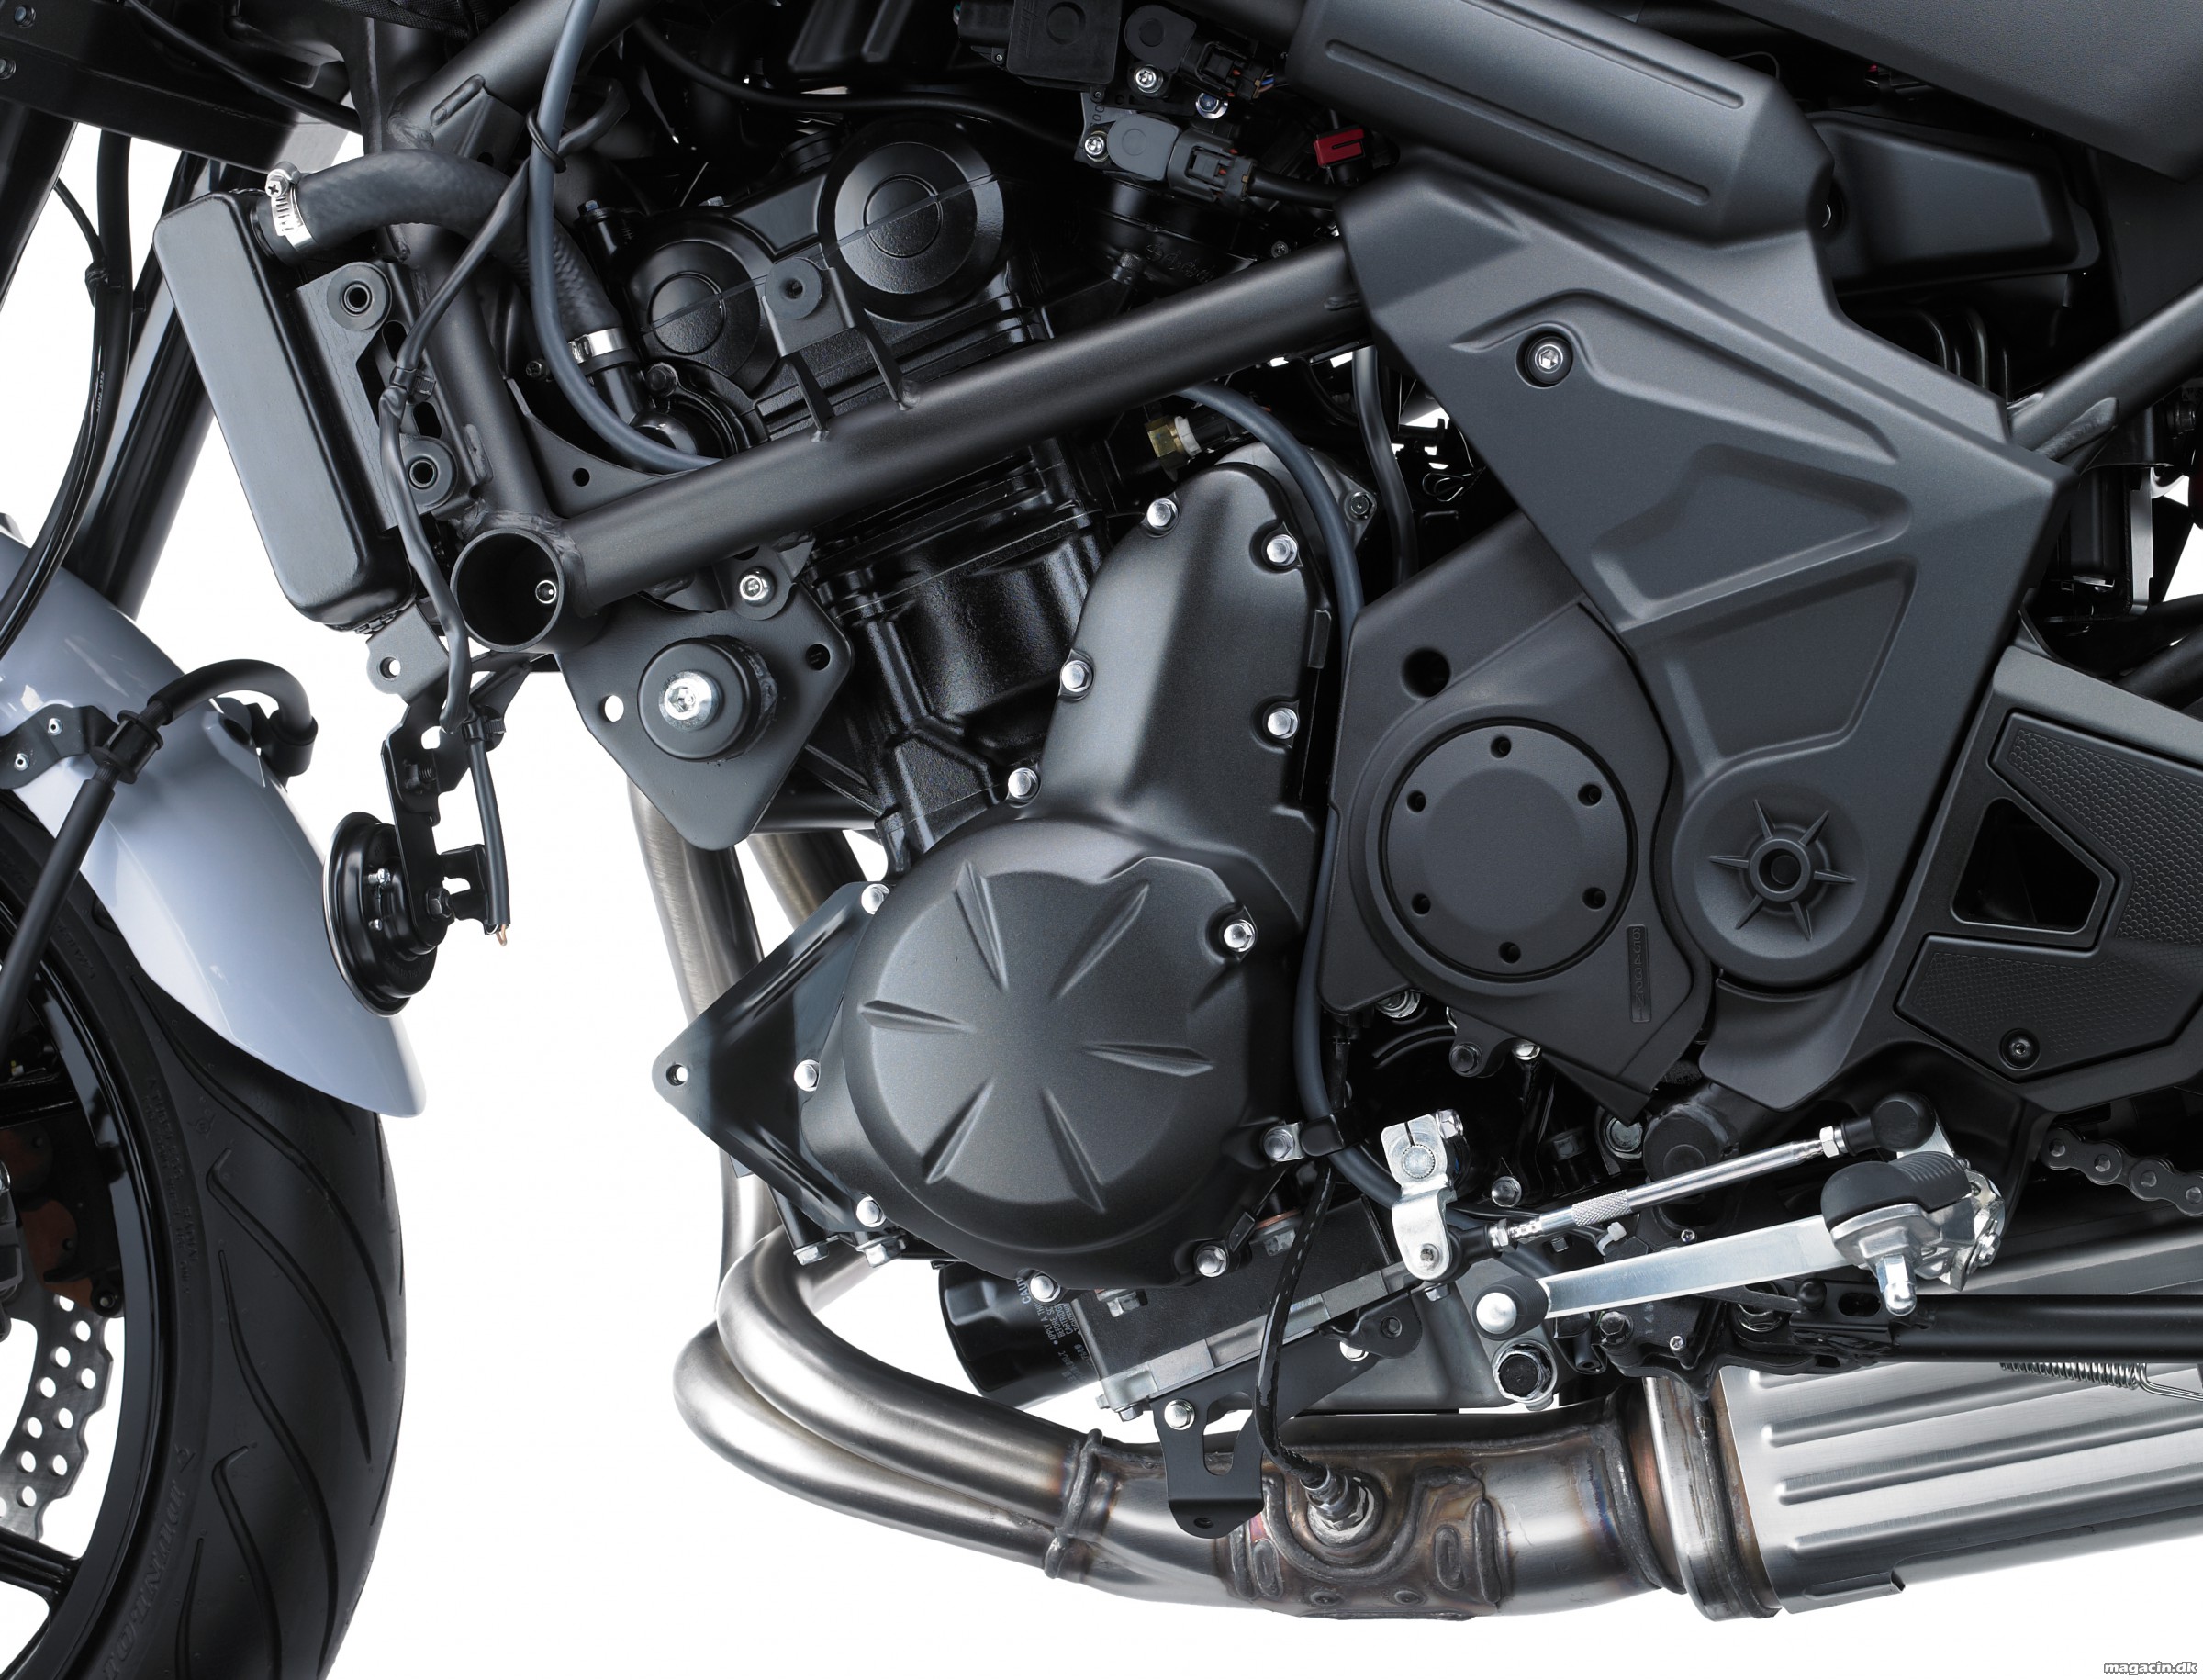 Test: 2015 Kawasaki Versys 650 – Værdi for hver en krone